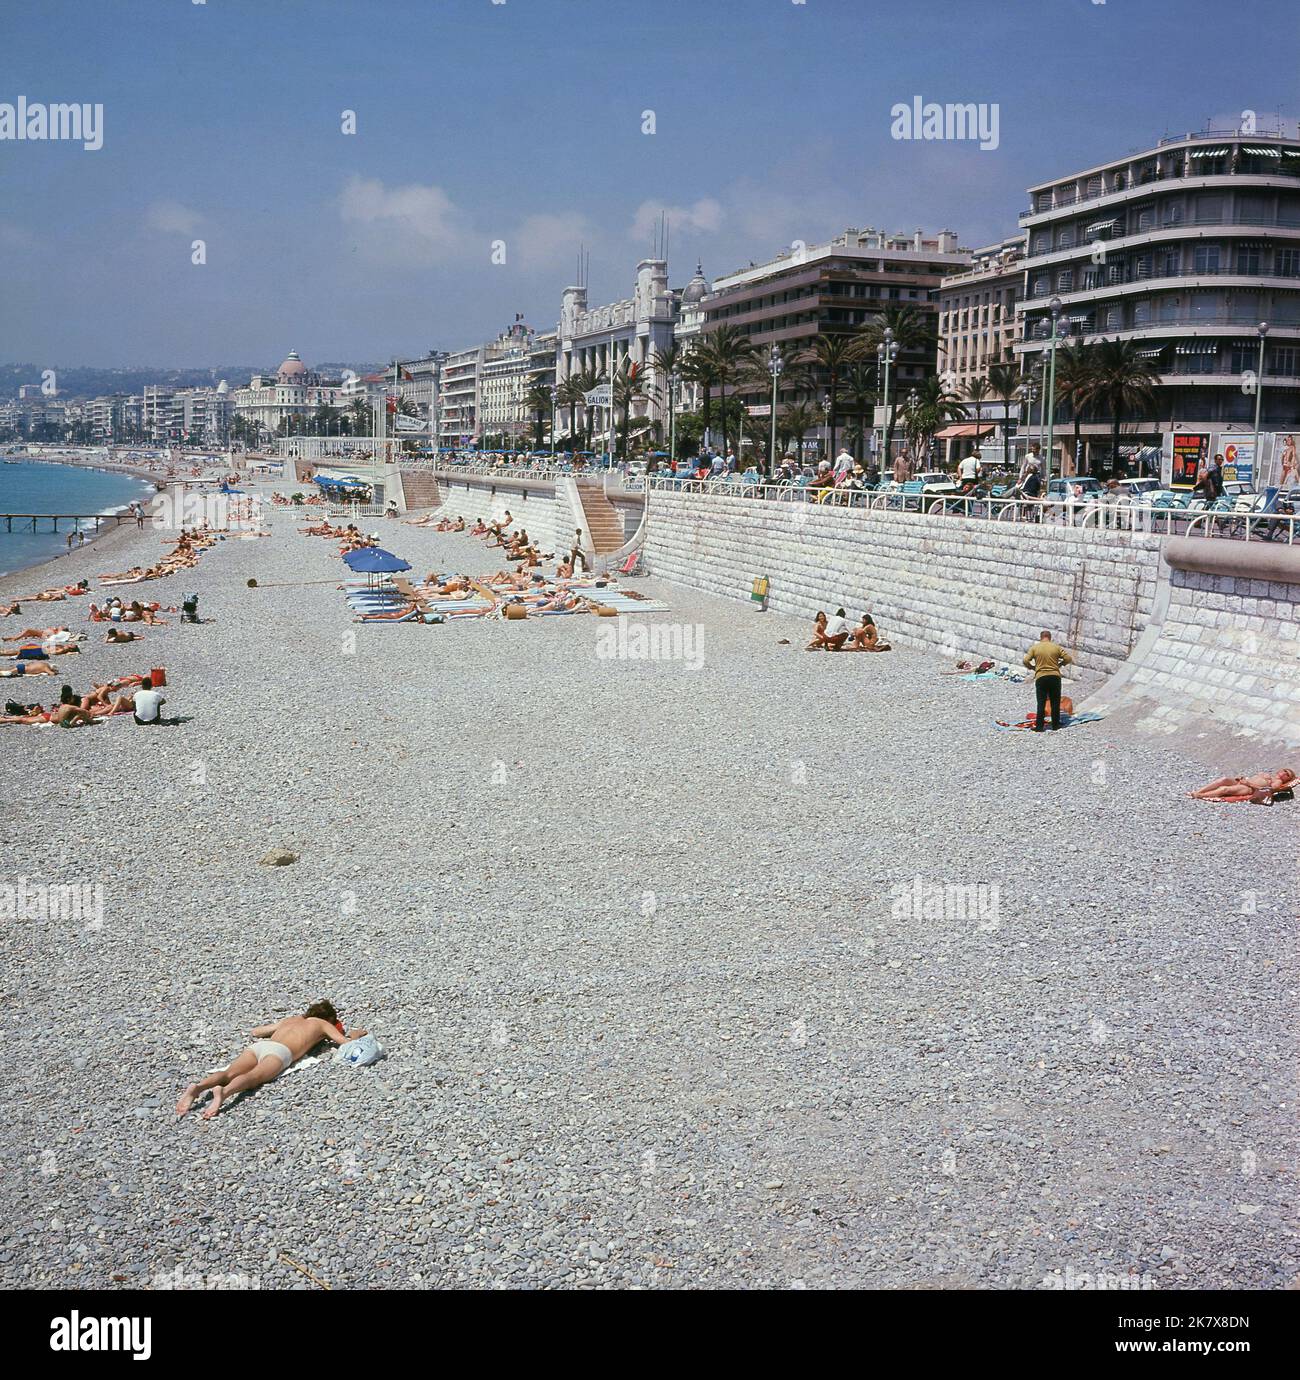 1960s, historisch, Blick auf den Strand und die Küste, Promenade Anglais, Nizza, Frankreich. Ein Schild für Ruhl Plage, ein privates Strandrestaurant, ist zu sehen. Ruhl selbst ist ein öffentlicher Strand an diesem Teil der Mittelmeerküste. Das berühmte Grand Hotel Le Negresco ist in der Ferne zu sehen. Stockfoto